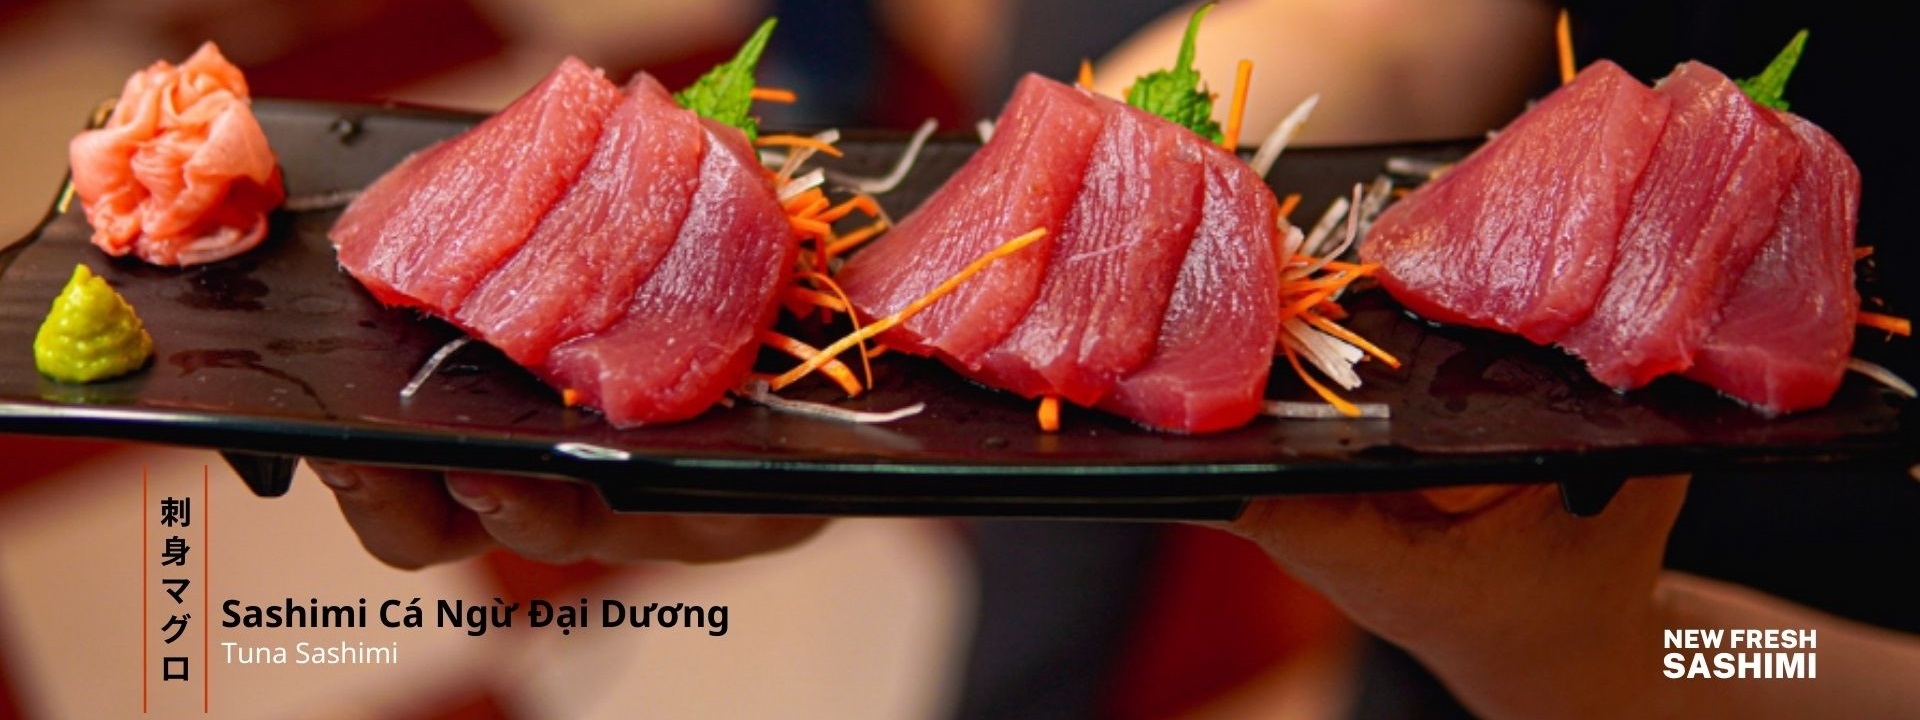 Sashimi Cá Ngừ là món ăn vừa toát lên hơi thở đại dương, vừa mang đậm màu sắc ẩm thực Nhật.
Từng lát thịt cá đỏ âu, đàn hồi được fillet mỏng từng lát đẹp mắt, mang theo vị ngọt nhẹ nhàng, thanh tao xen lẫn chút vị béo tinh tế làm người ta khó lòng cưỡng